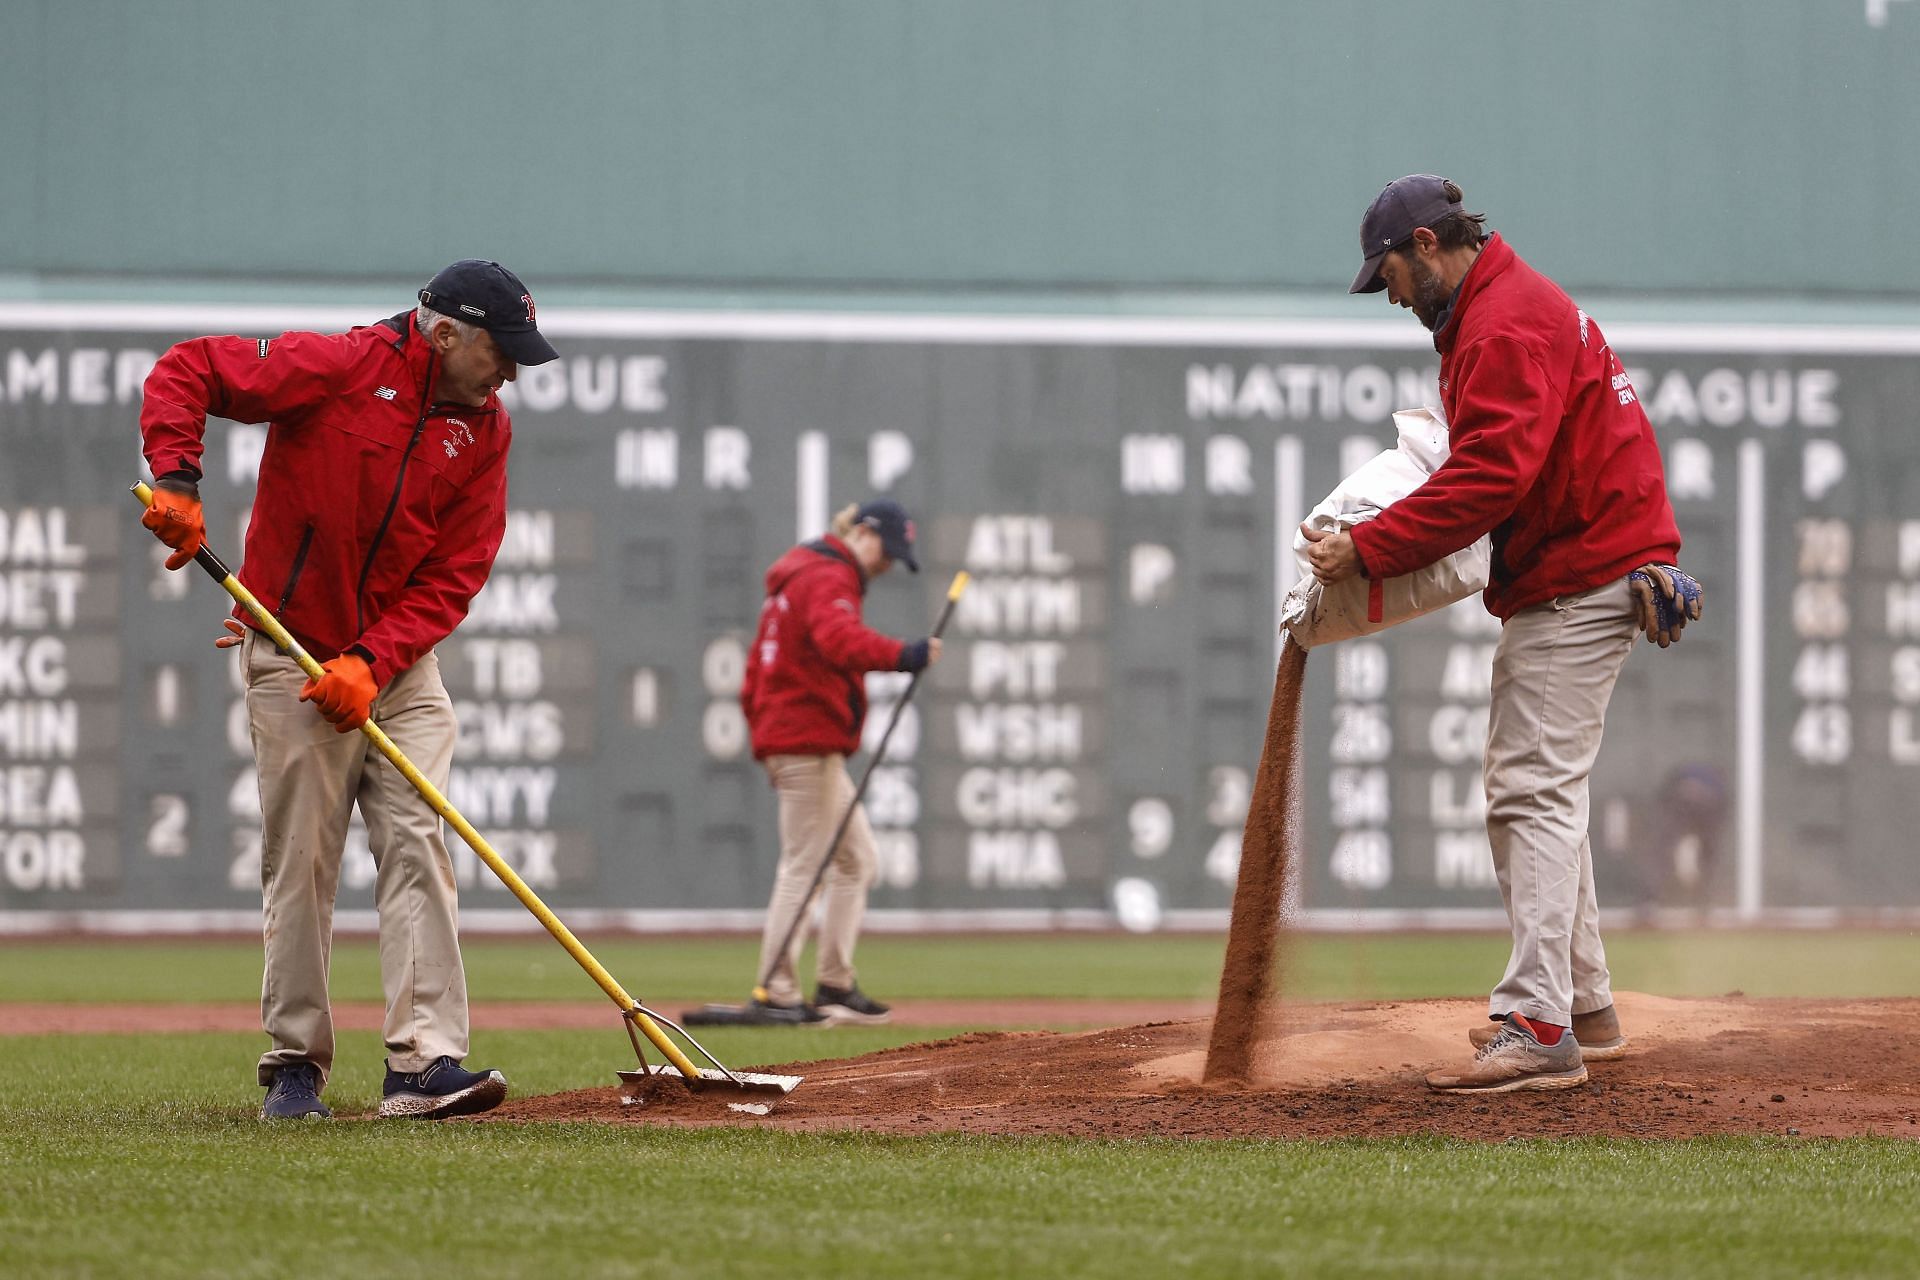 Matt Dermody gets Boston Red Sox call up after homophobic tweets - Outsports